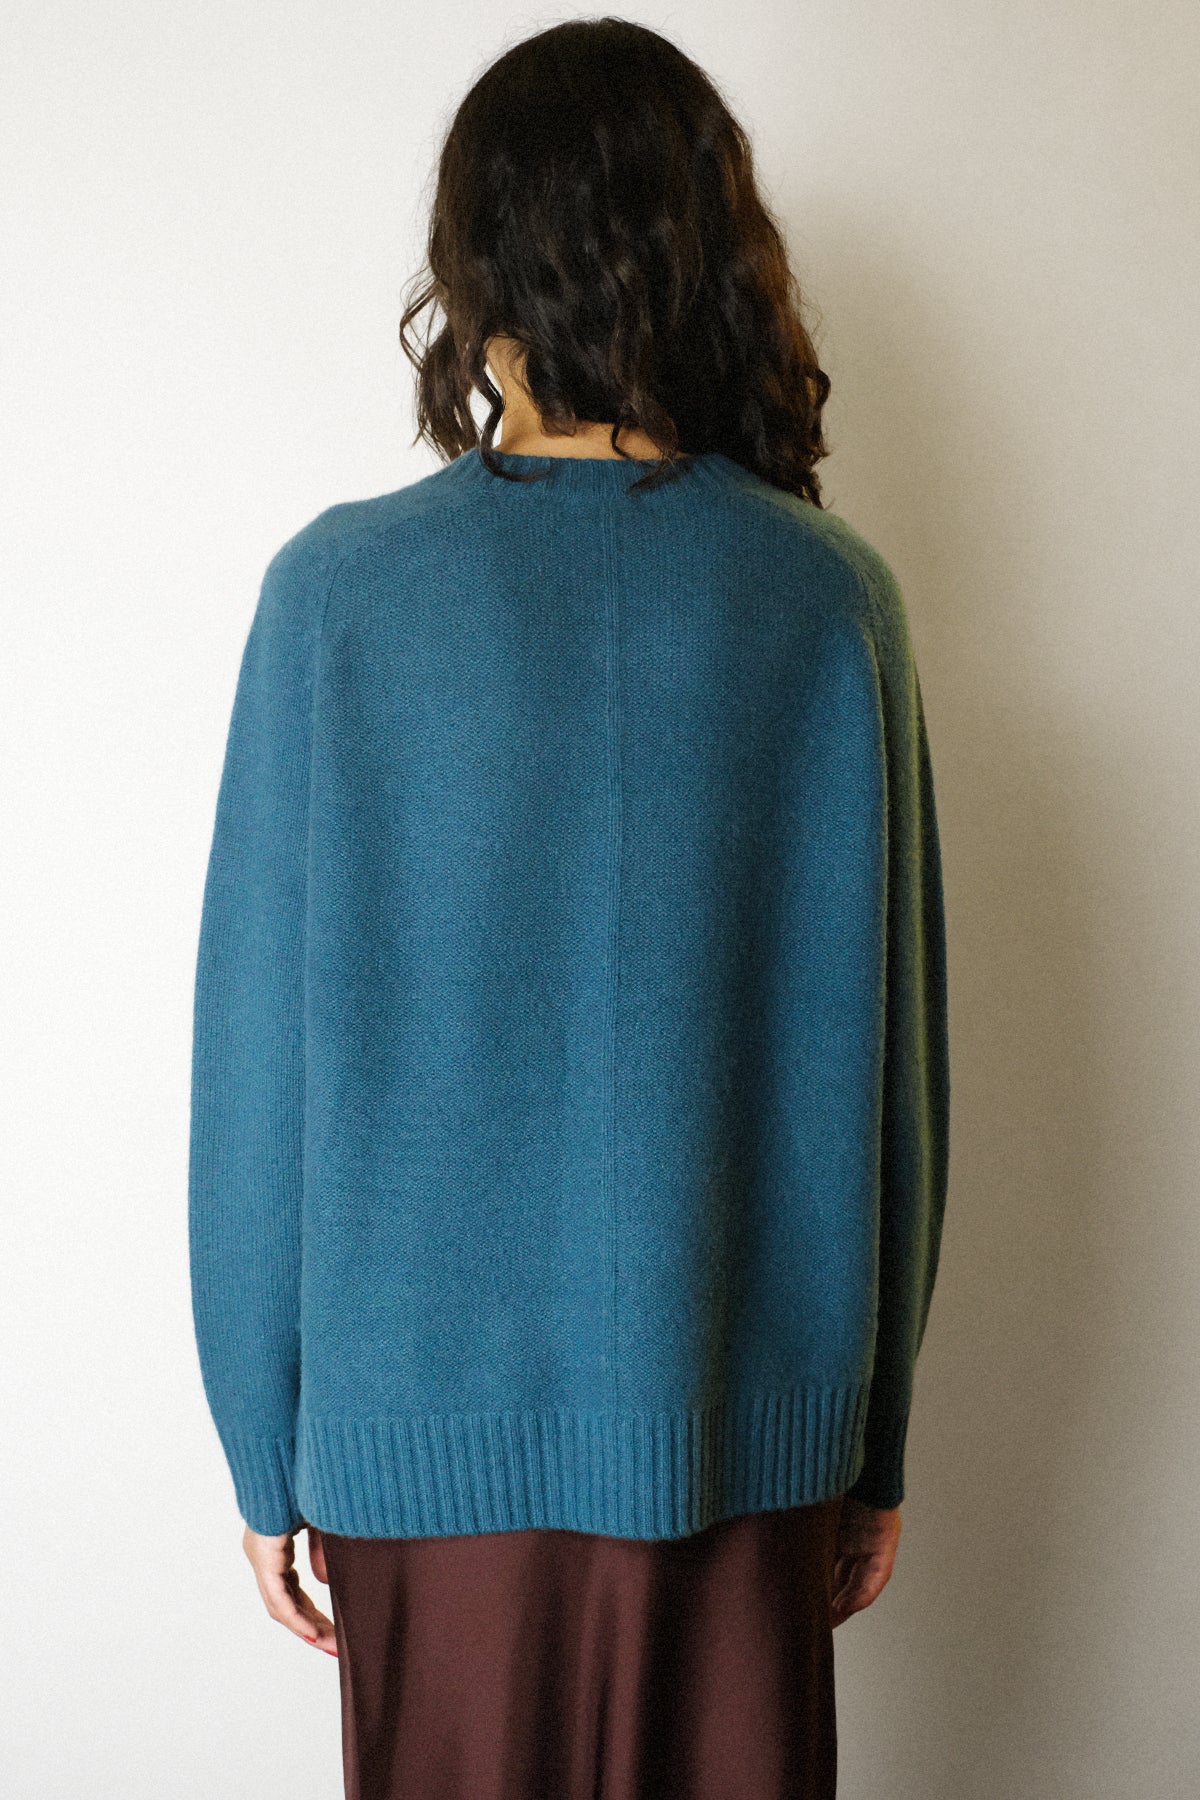 Joseph — Round Neck Cashmere Sweater / Dark Teal